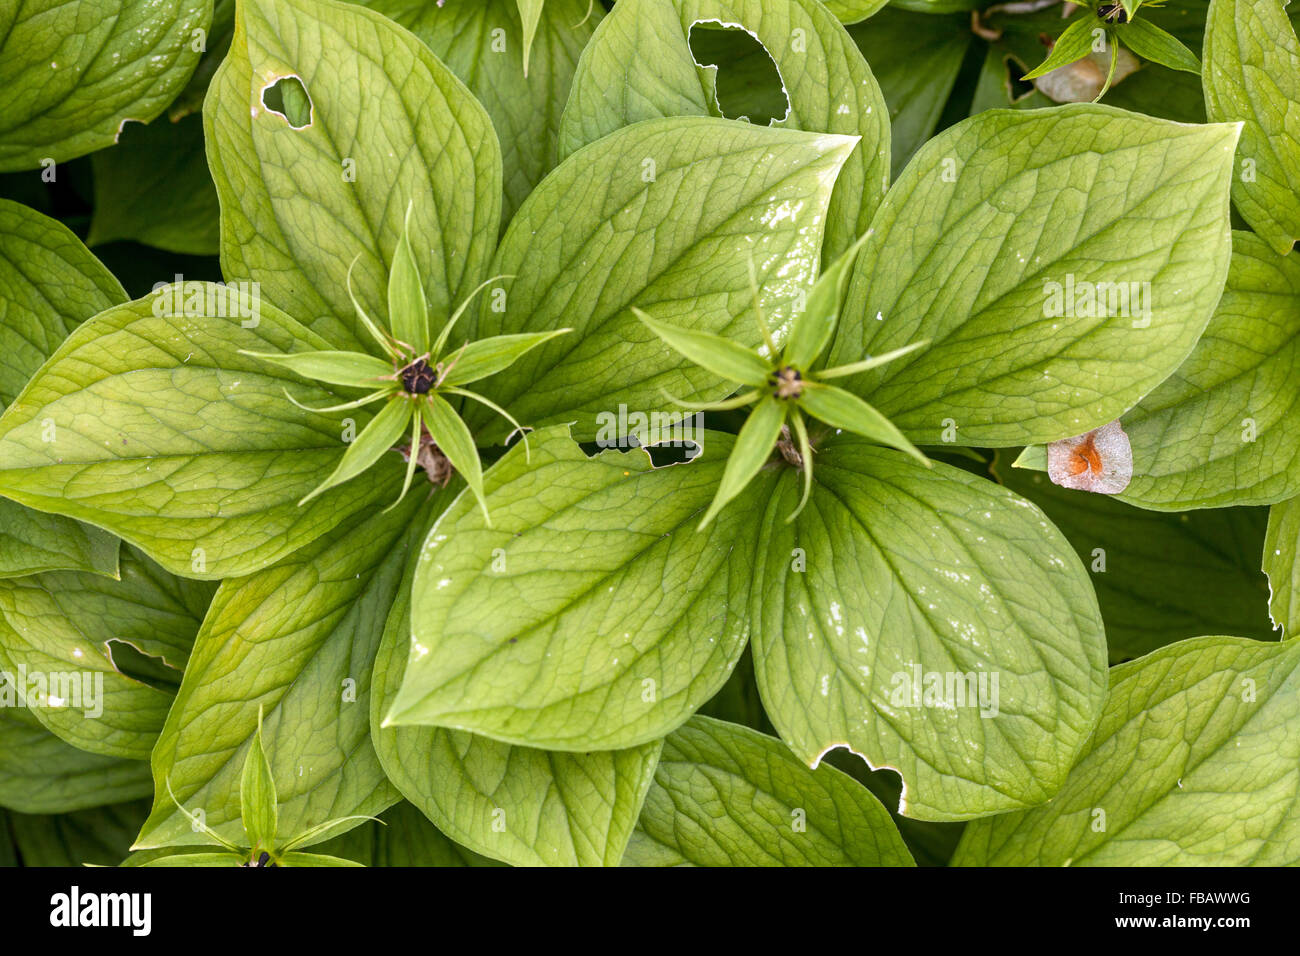 Paris quadrifolia leaves poisonous plants Stock Photo